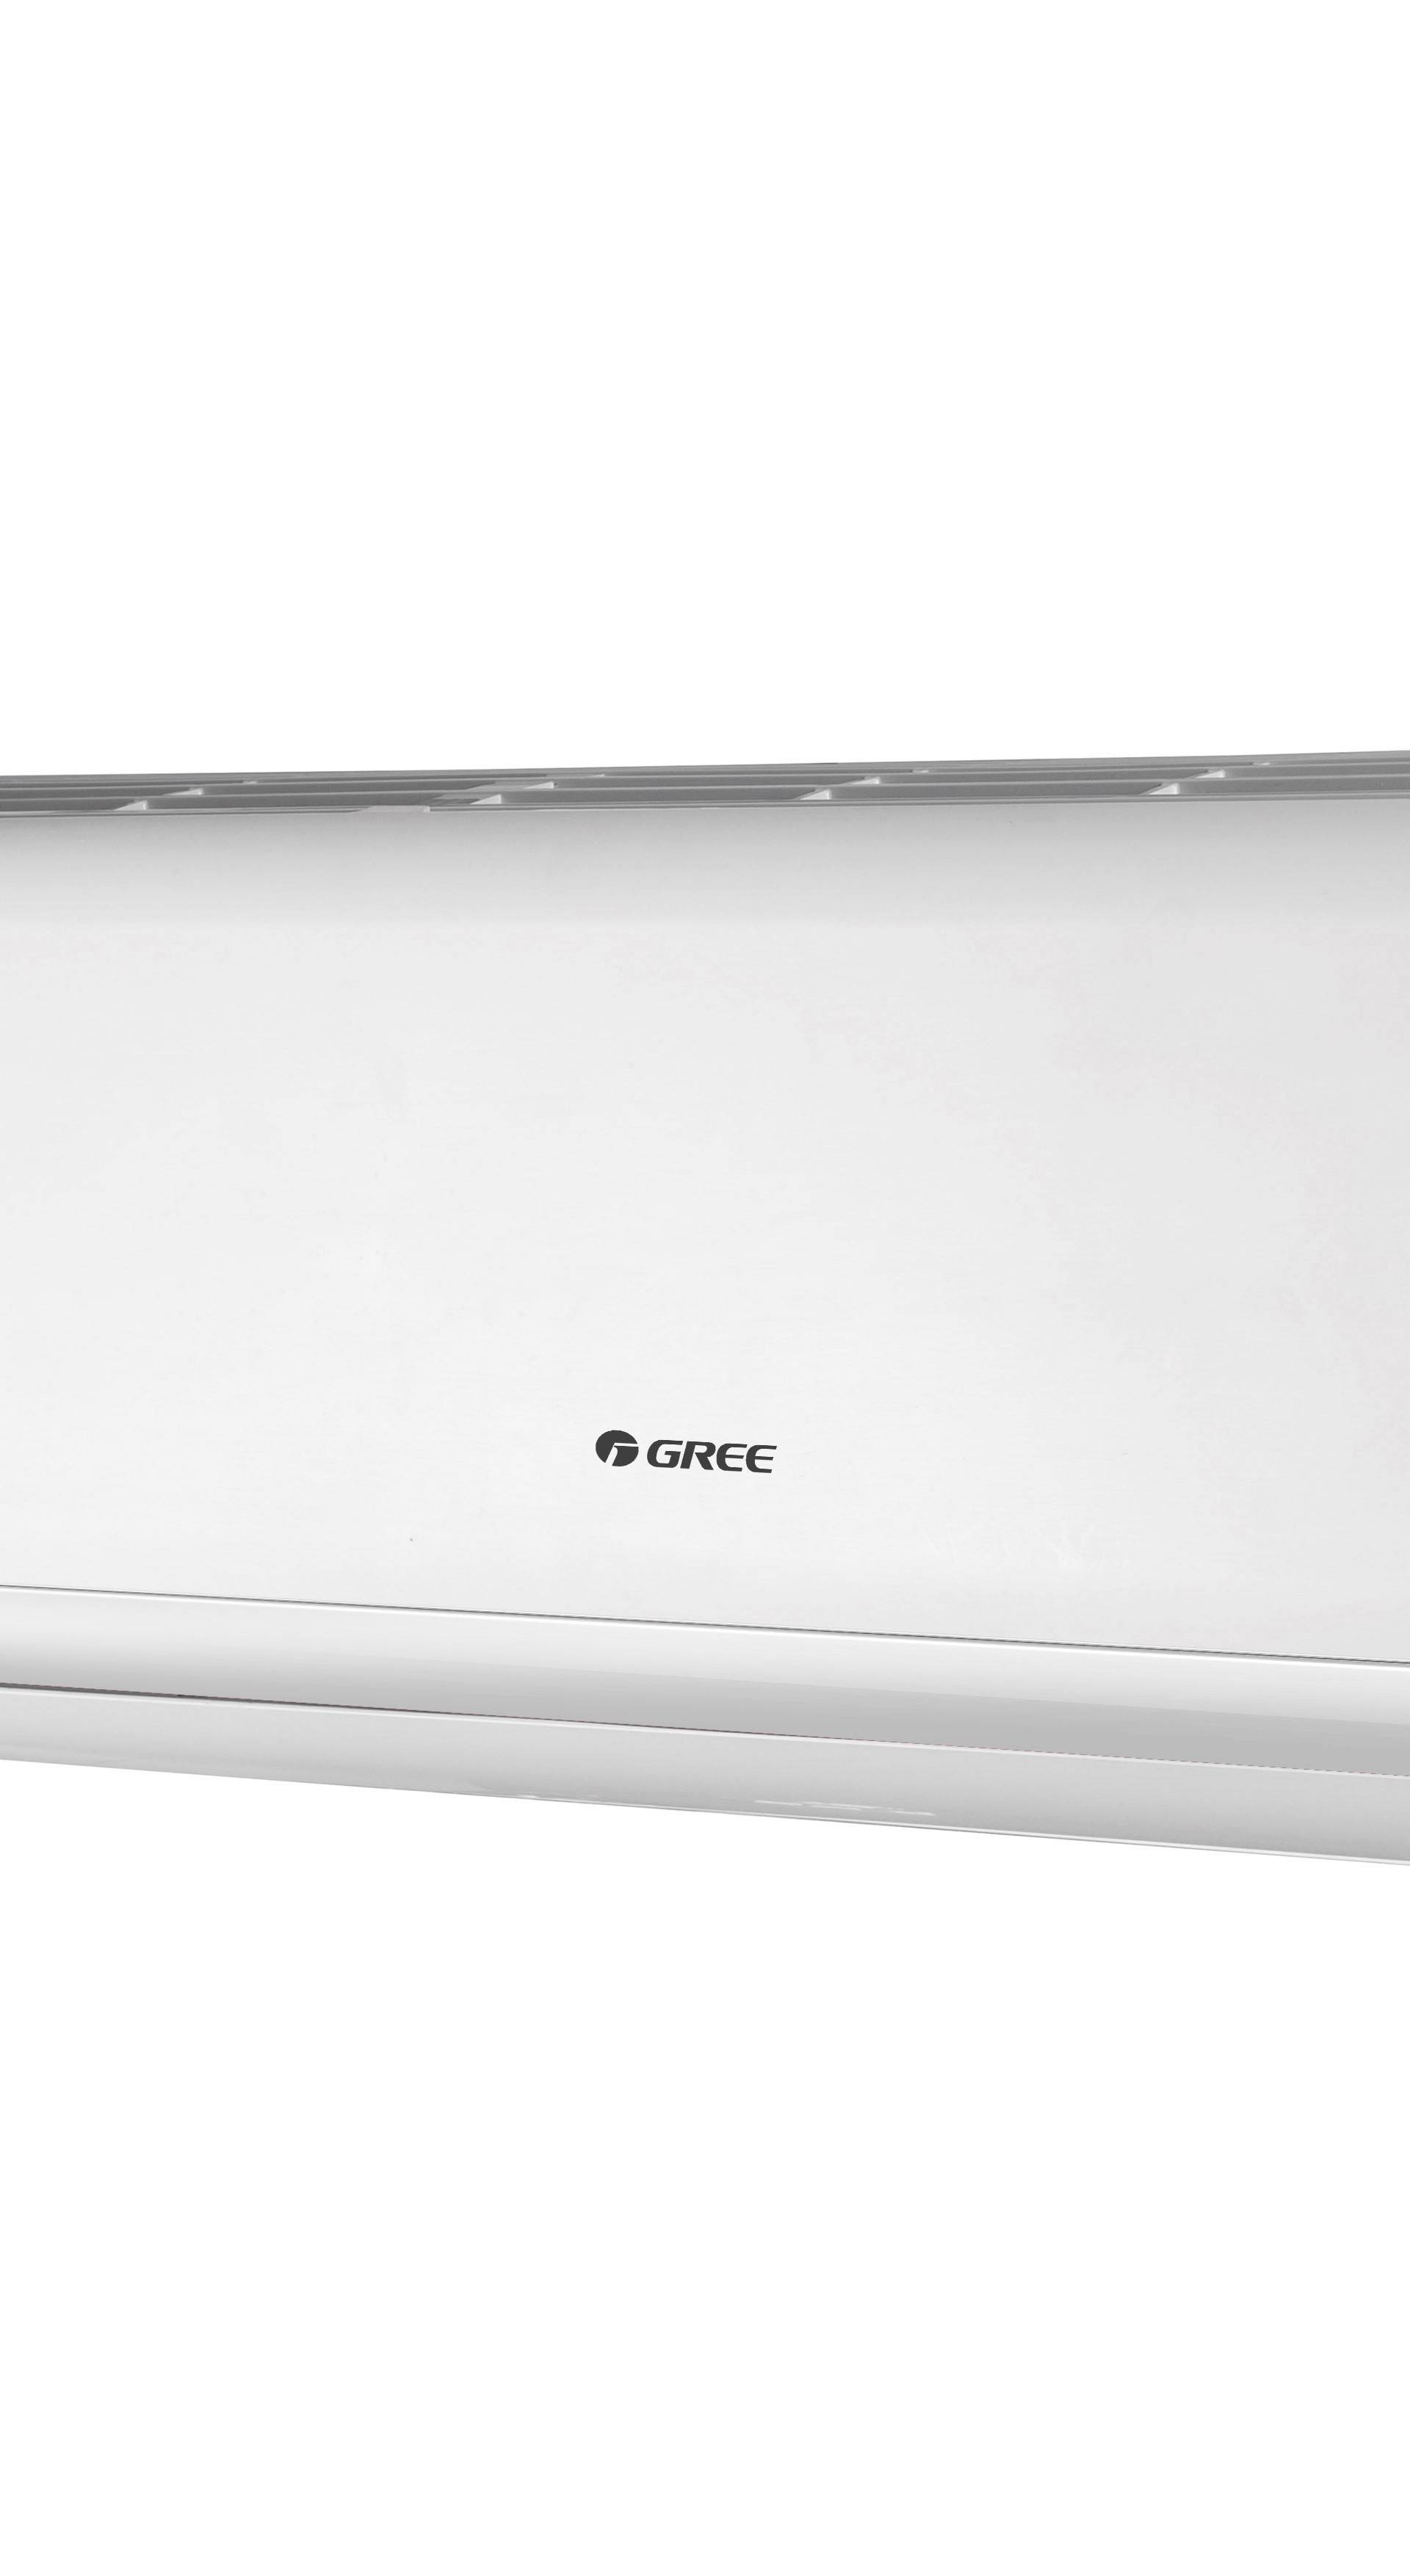 Svaki treći prodani klima uređaj na svijetu proizveo je Gree